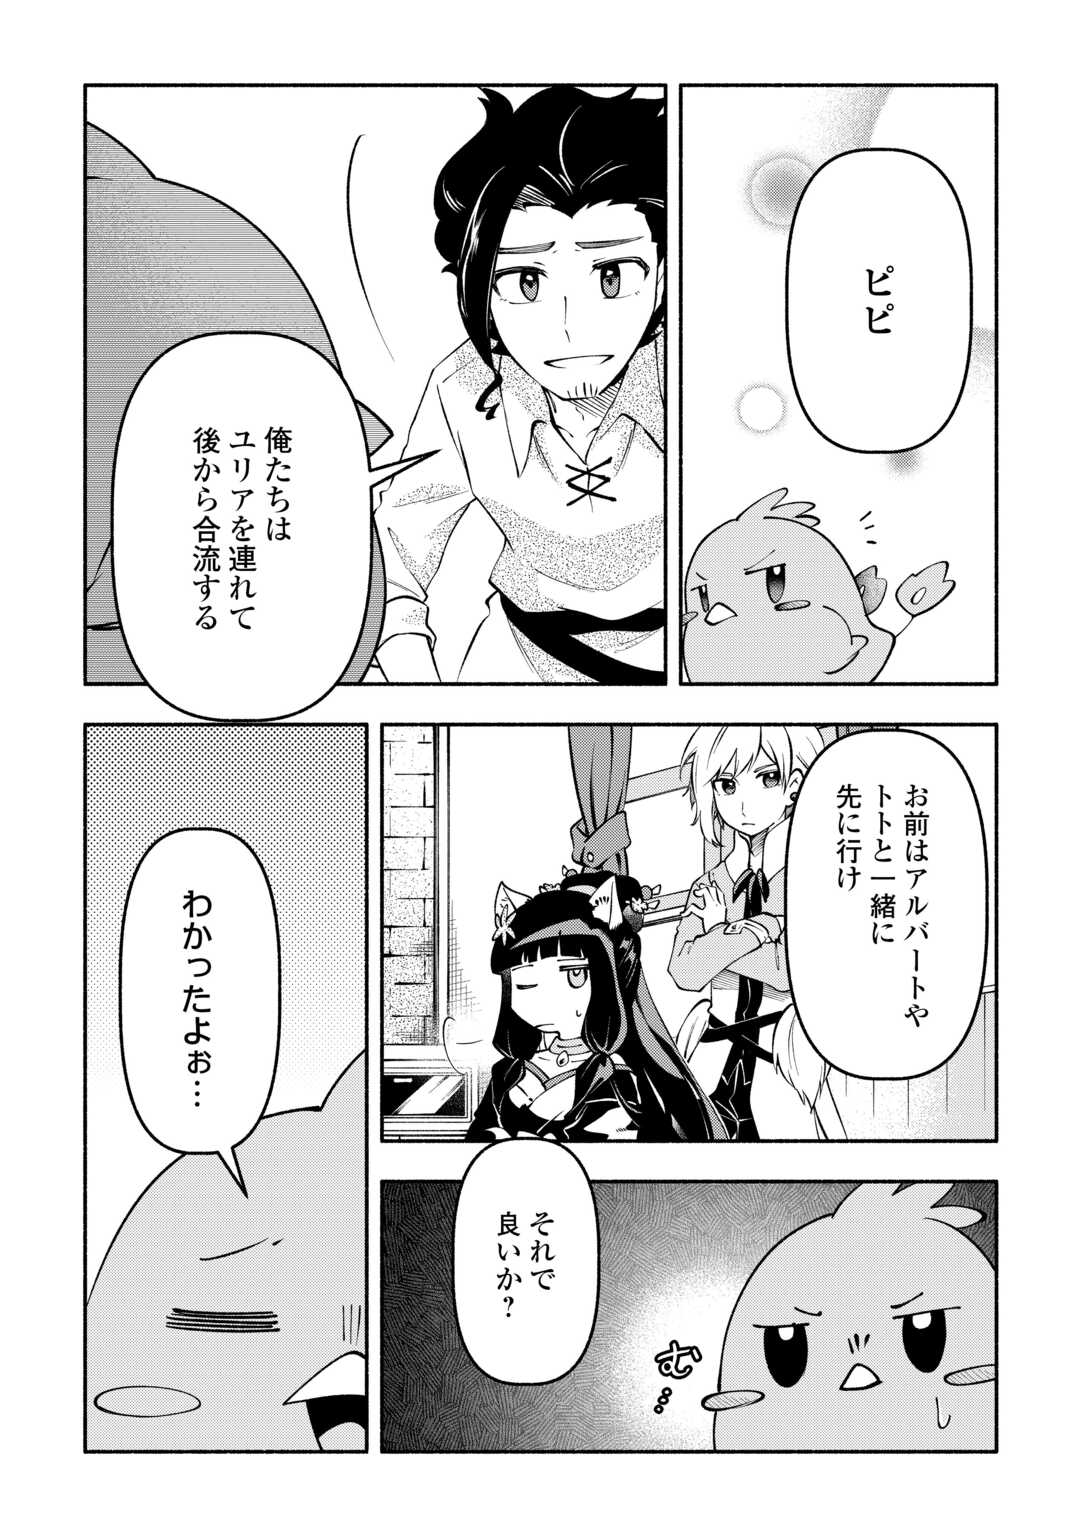 Osanago wa Saikyou no Tamer da to Kizuiteimasen! - Chapter 8 - Page 3